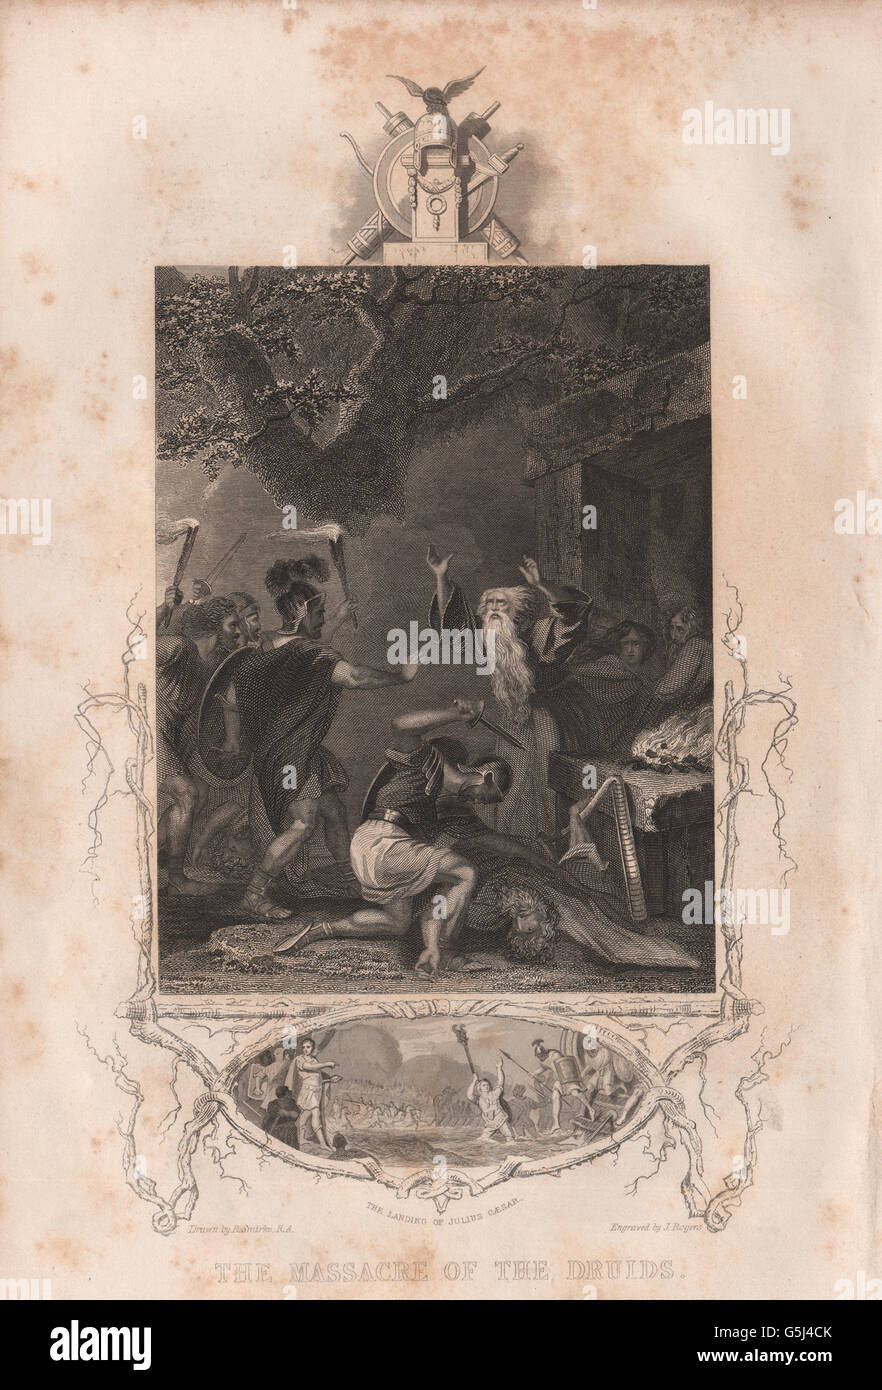 BRITISH HISTORY: The Massacre of the Druids. The landing of Julius Caesar, 1853 Stock Photo